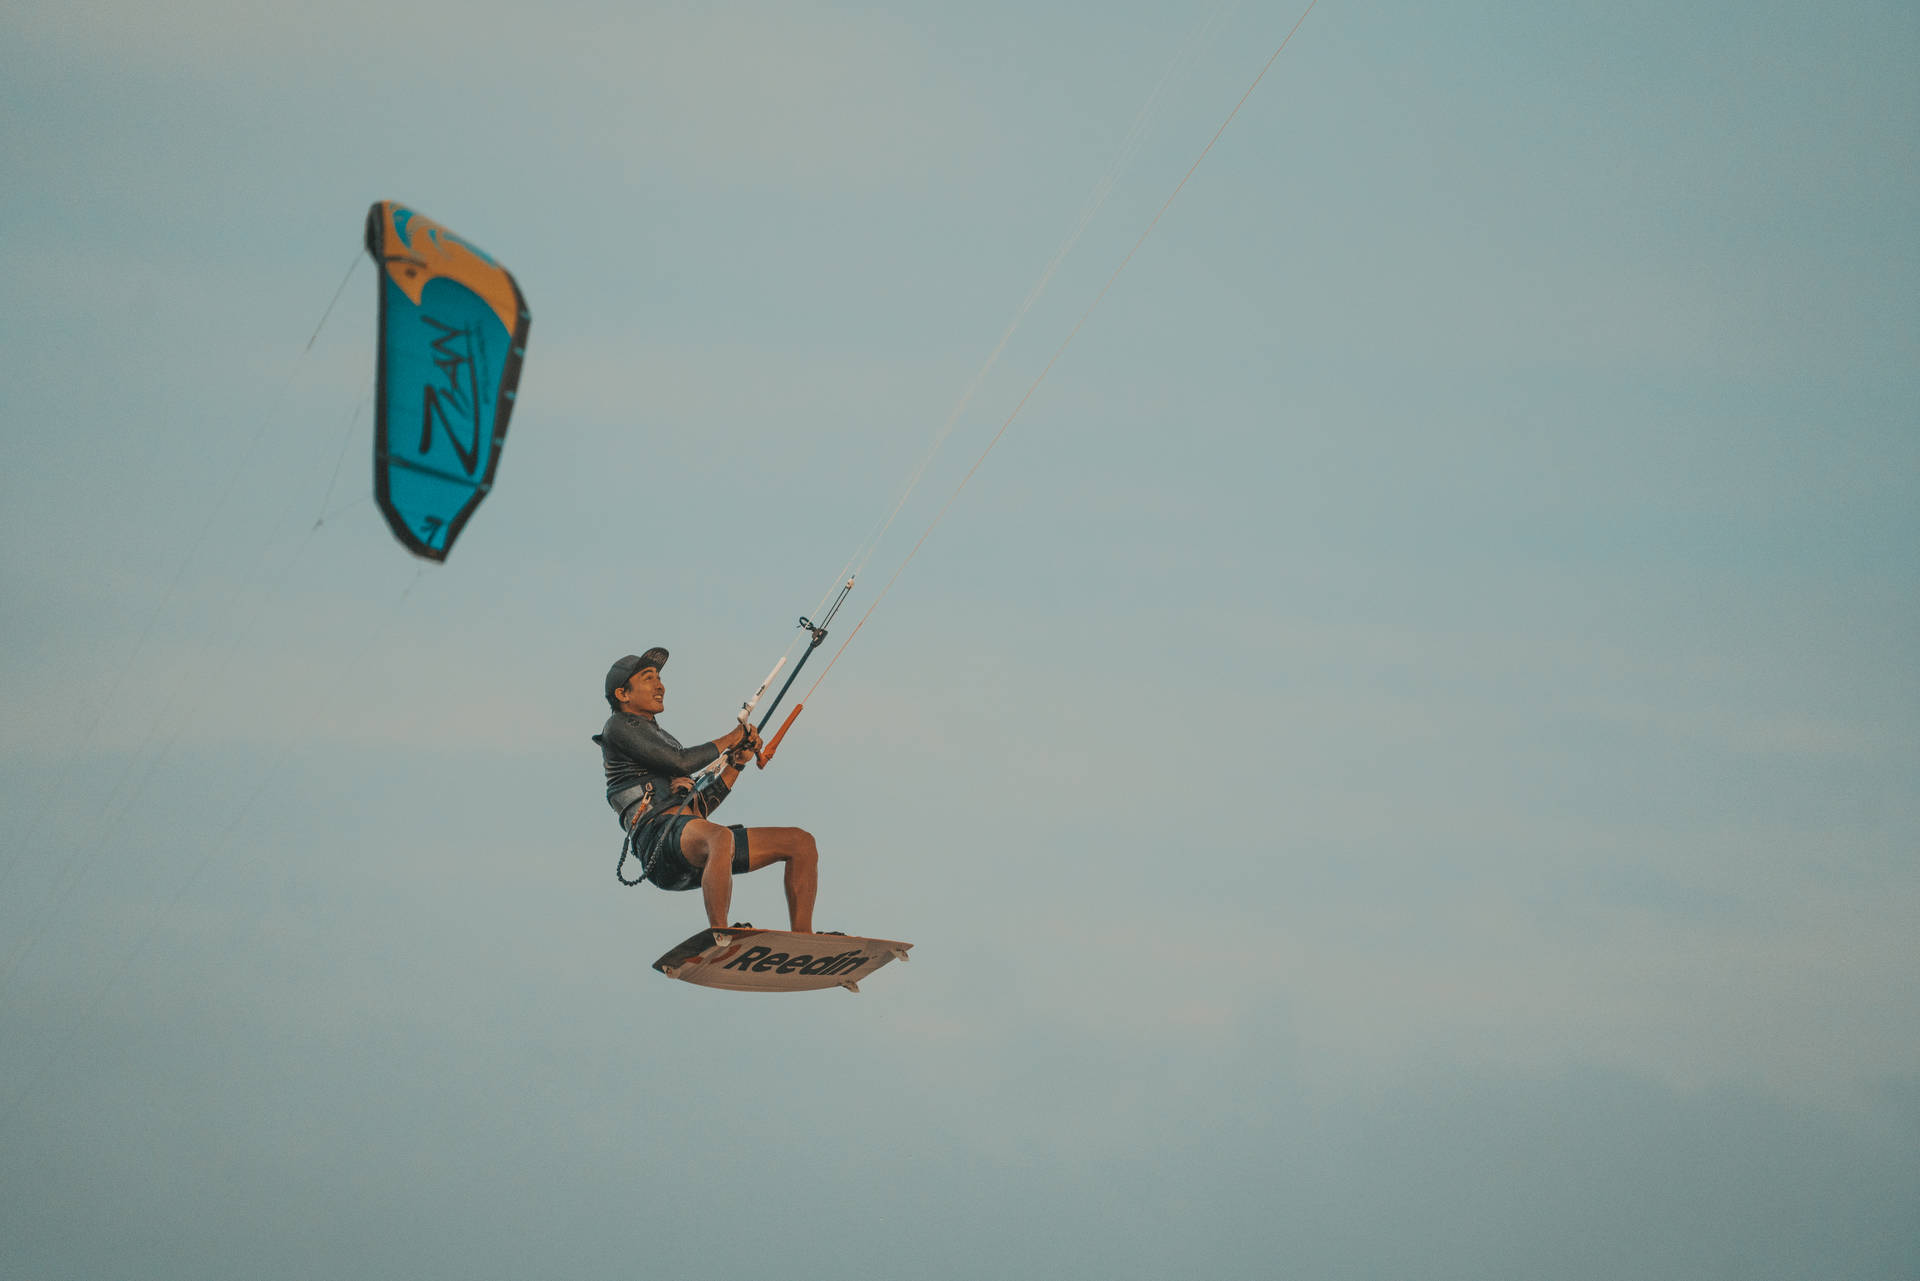 Windsurfing Extreme Stunt Background